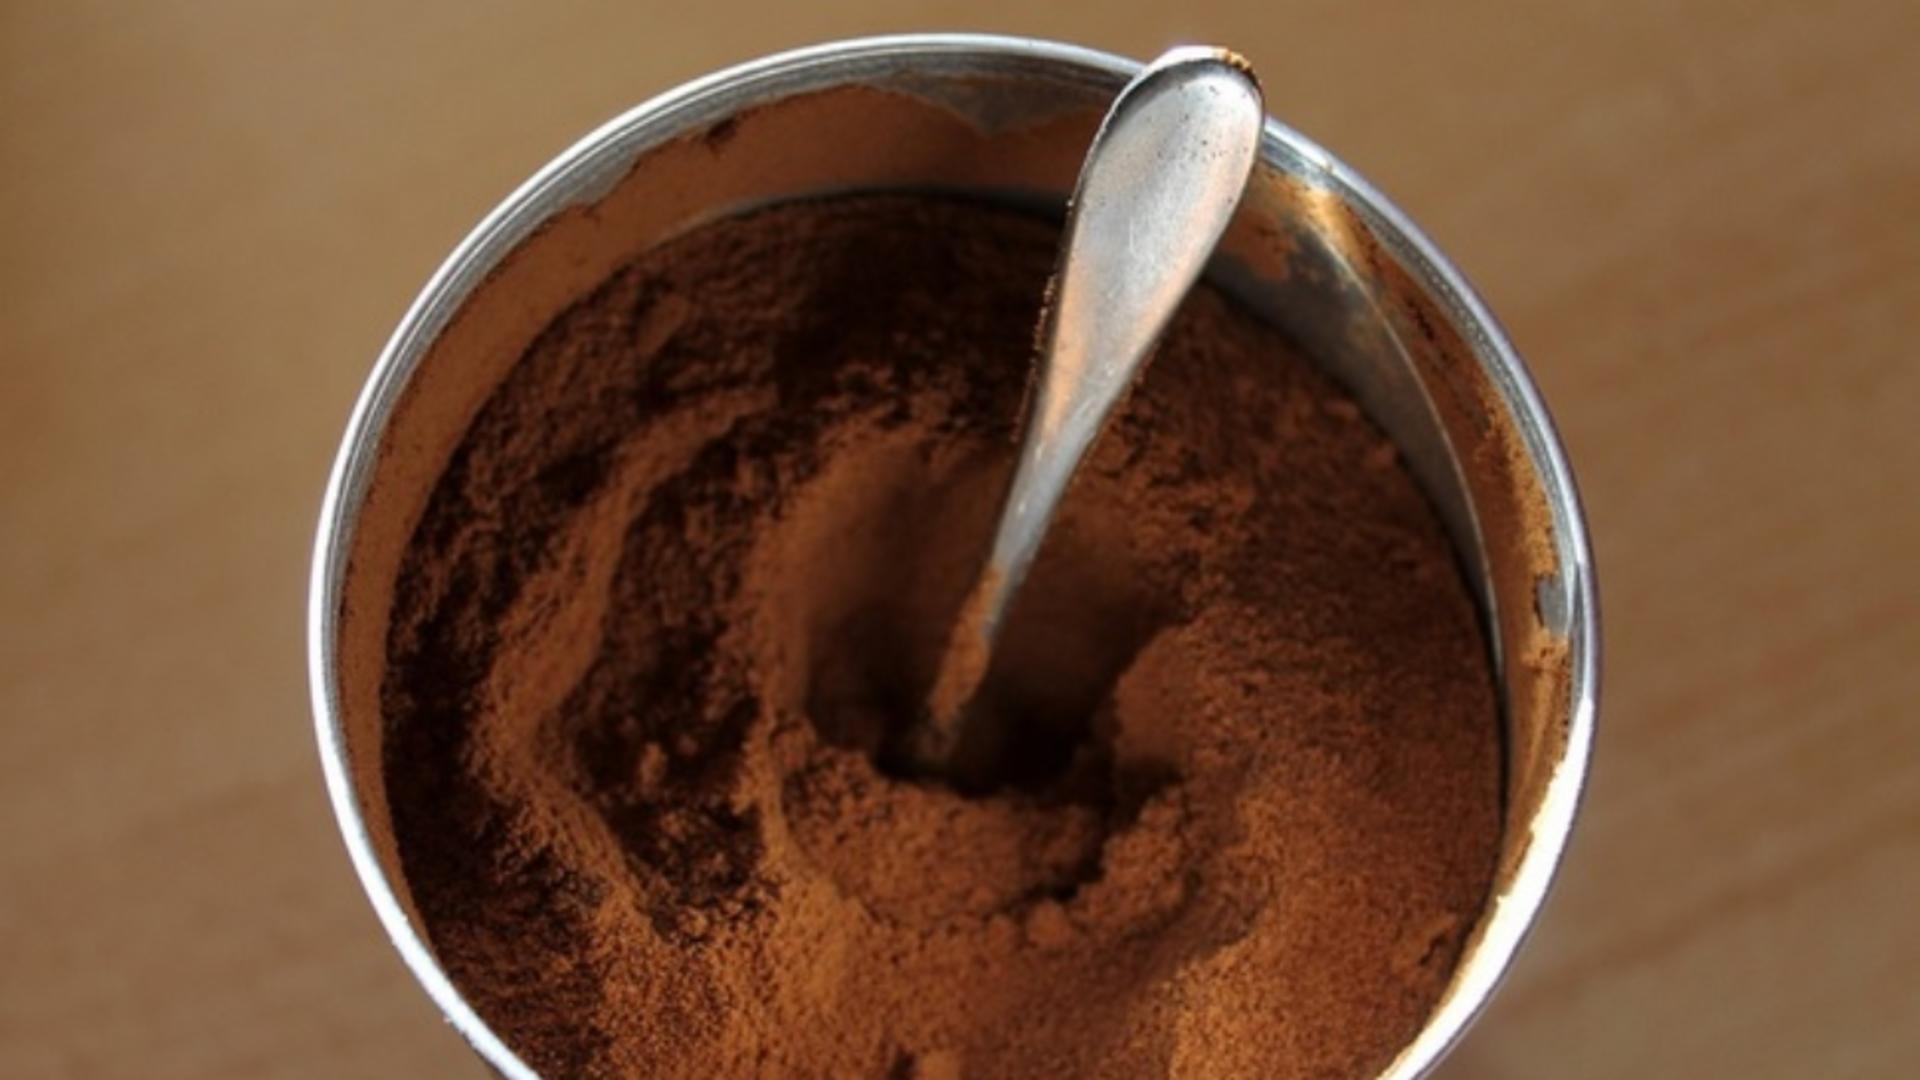 Înlocuitorul cafelei este excelent pentru digestie, arsuri la stomac, detoxifierea ficatului și slăbit